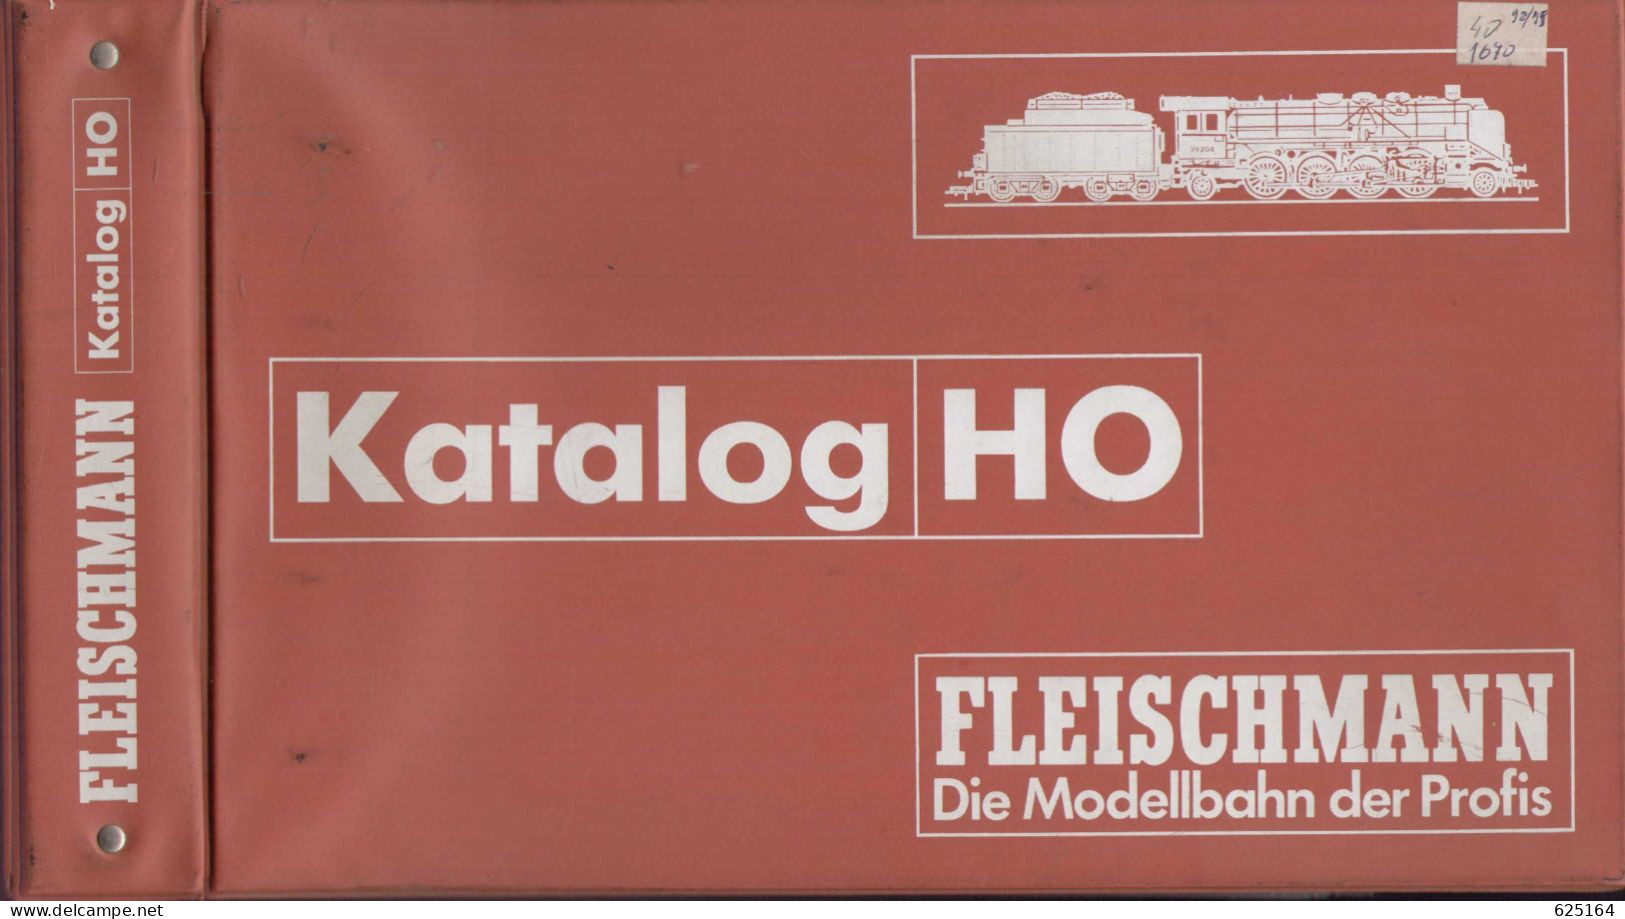 Catalogue FLEISCHMANN 1998/99 Händlerkatalog HO Die Modellbahn Der Profis Mit Original Ordner - Alemania